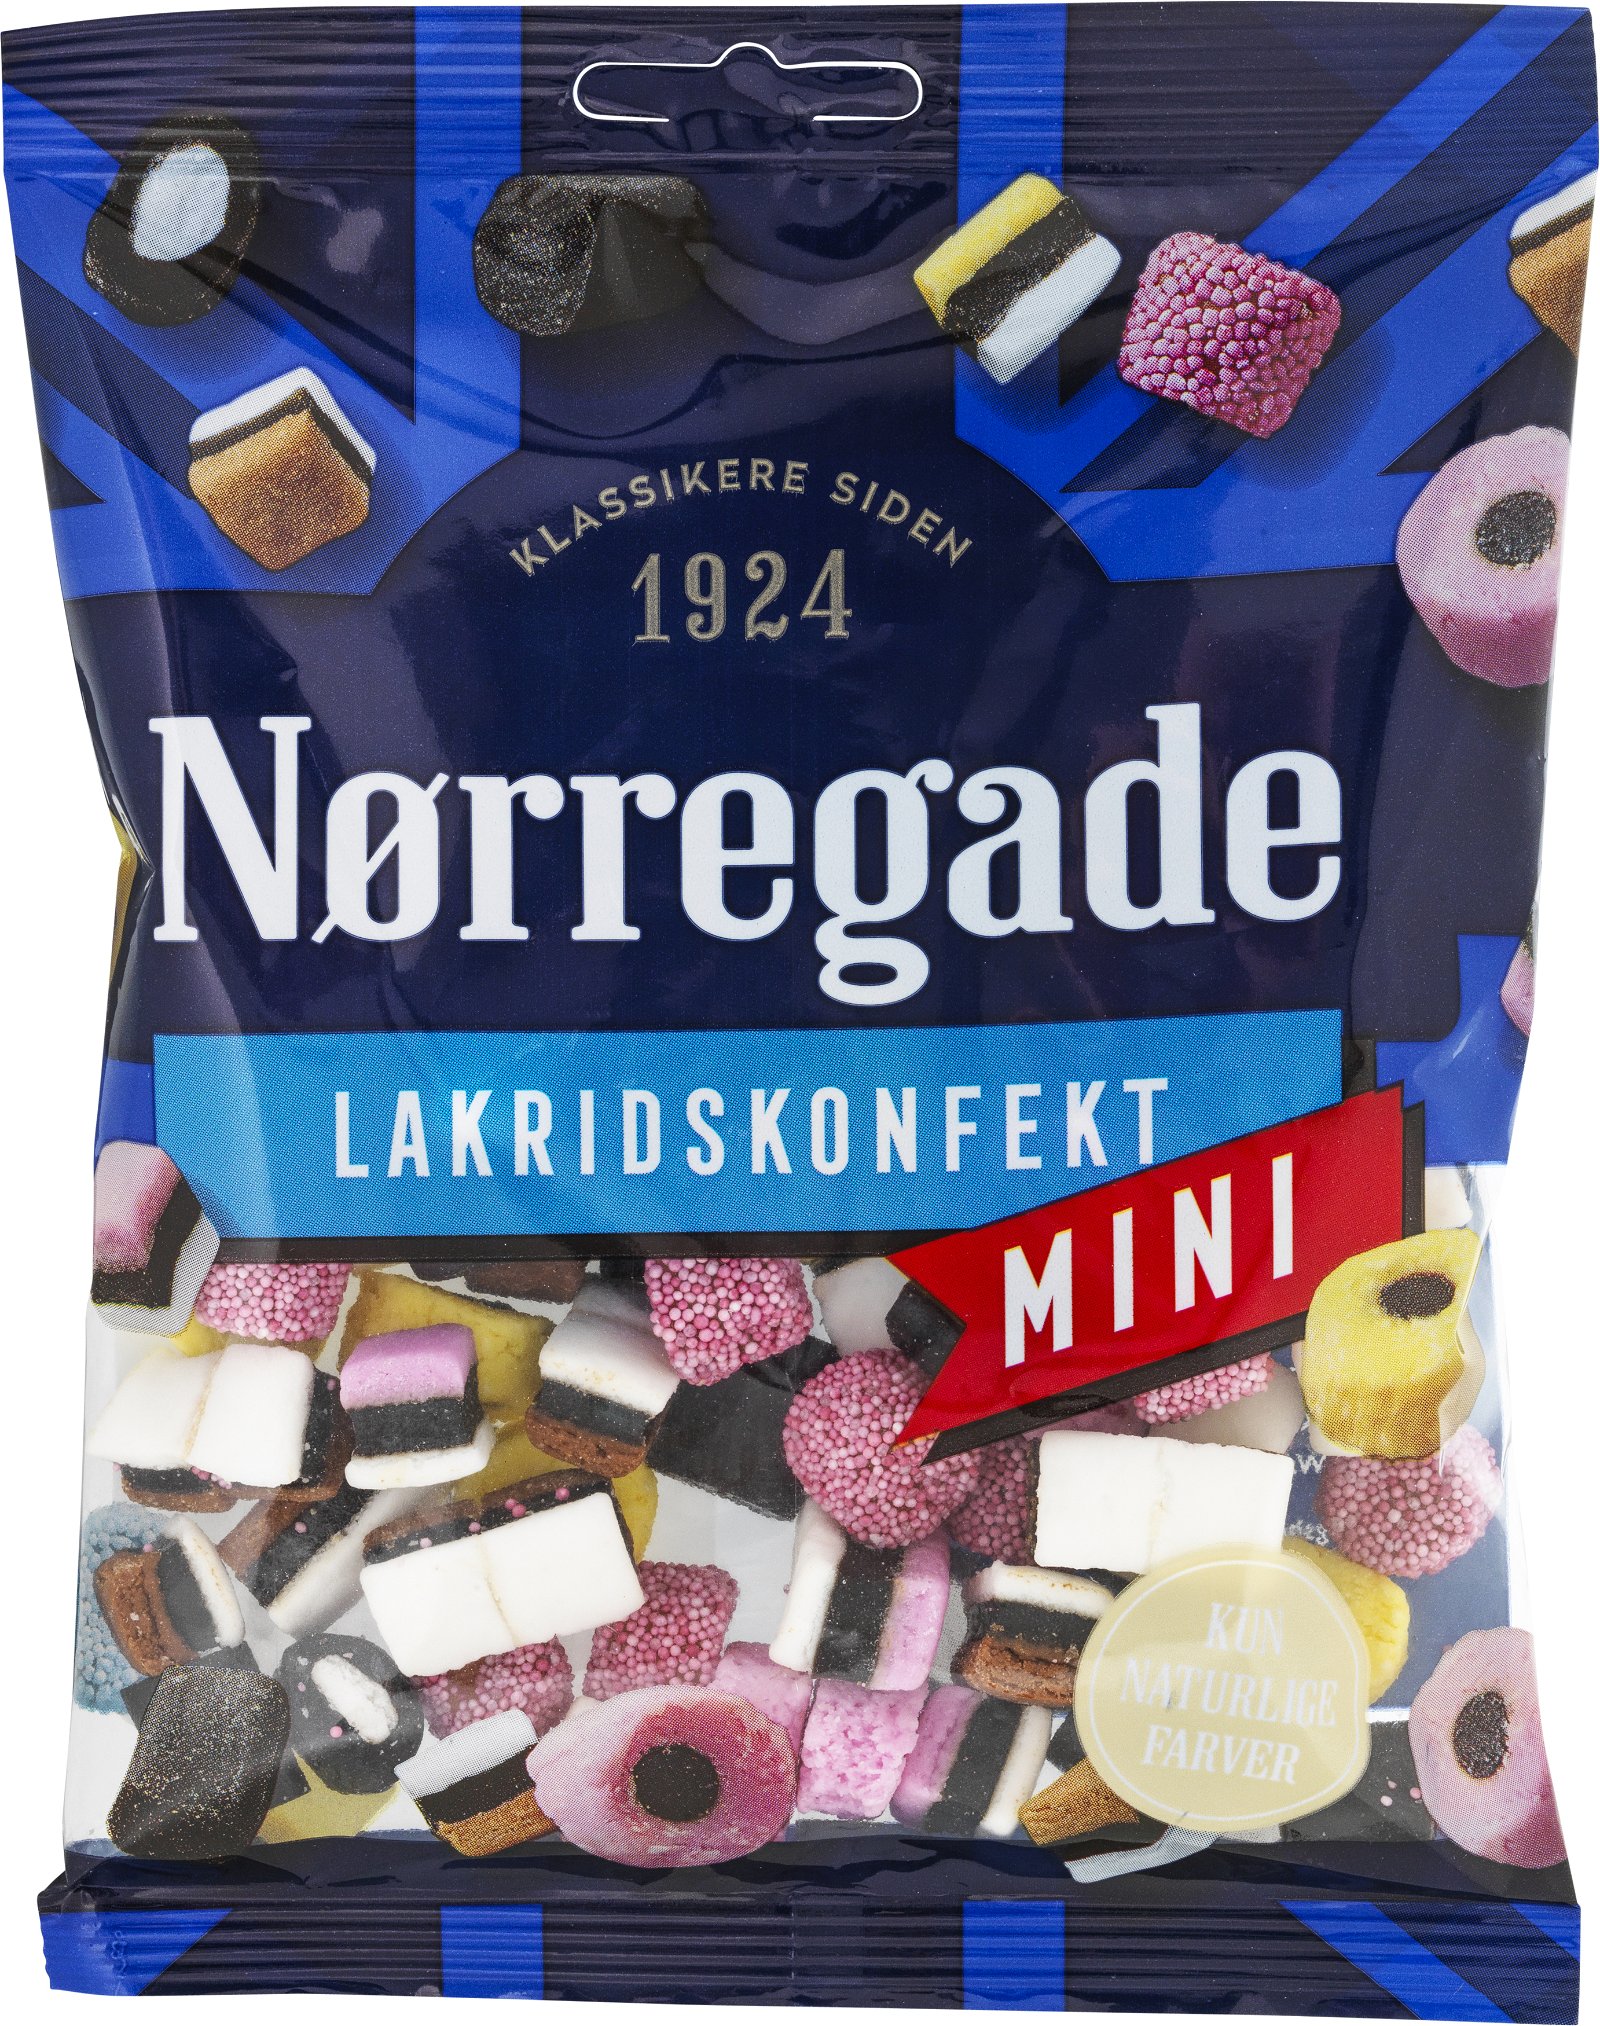 Nørregade Lakridskonfekt 130g